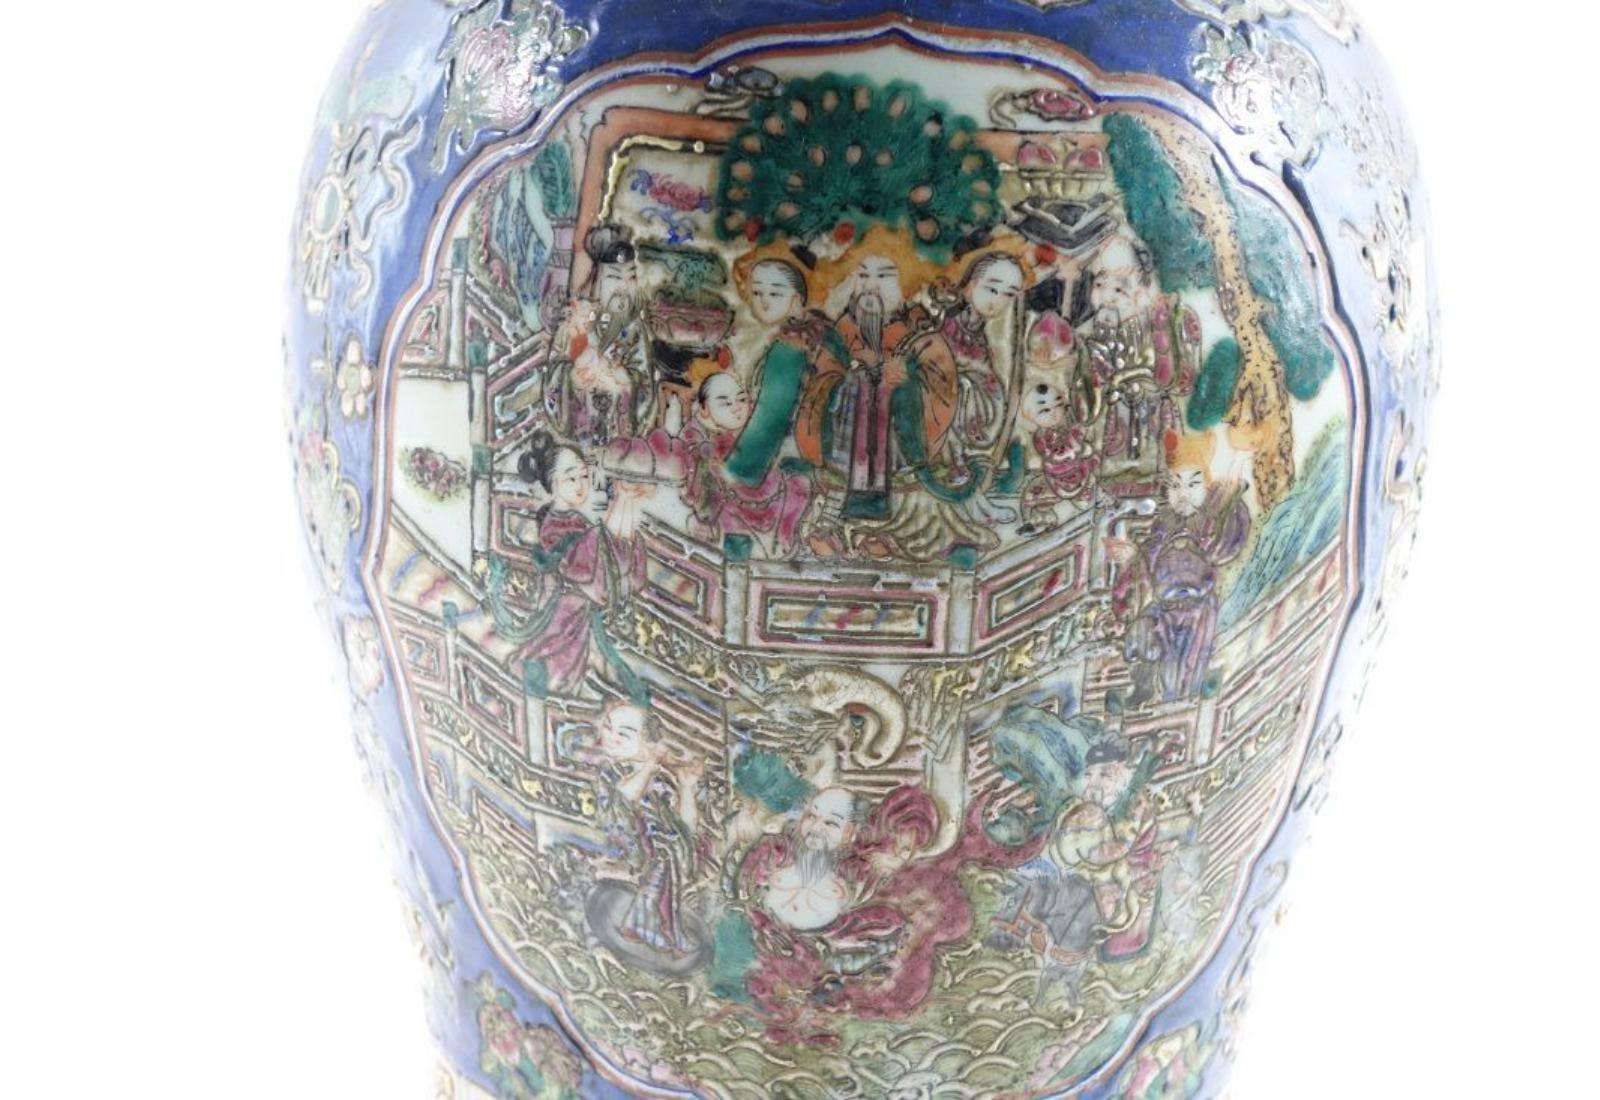 Paire d'urnes anciennes en porcelaine de Chine, avec des détails peints très fins sur les urnes. Il présente une variété de couleurs, principalement un bleu profond et vibrant, du jaune et d'autres couleurs vives. 22